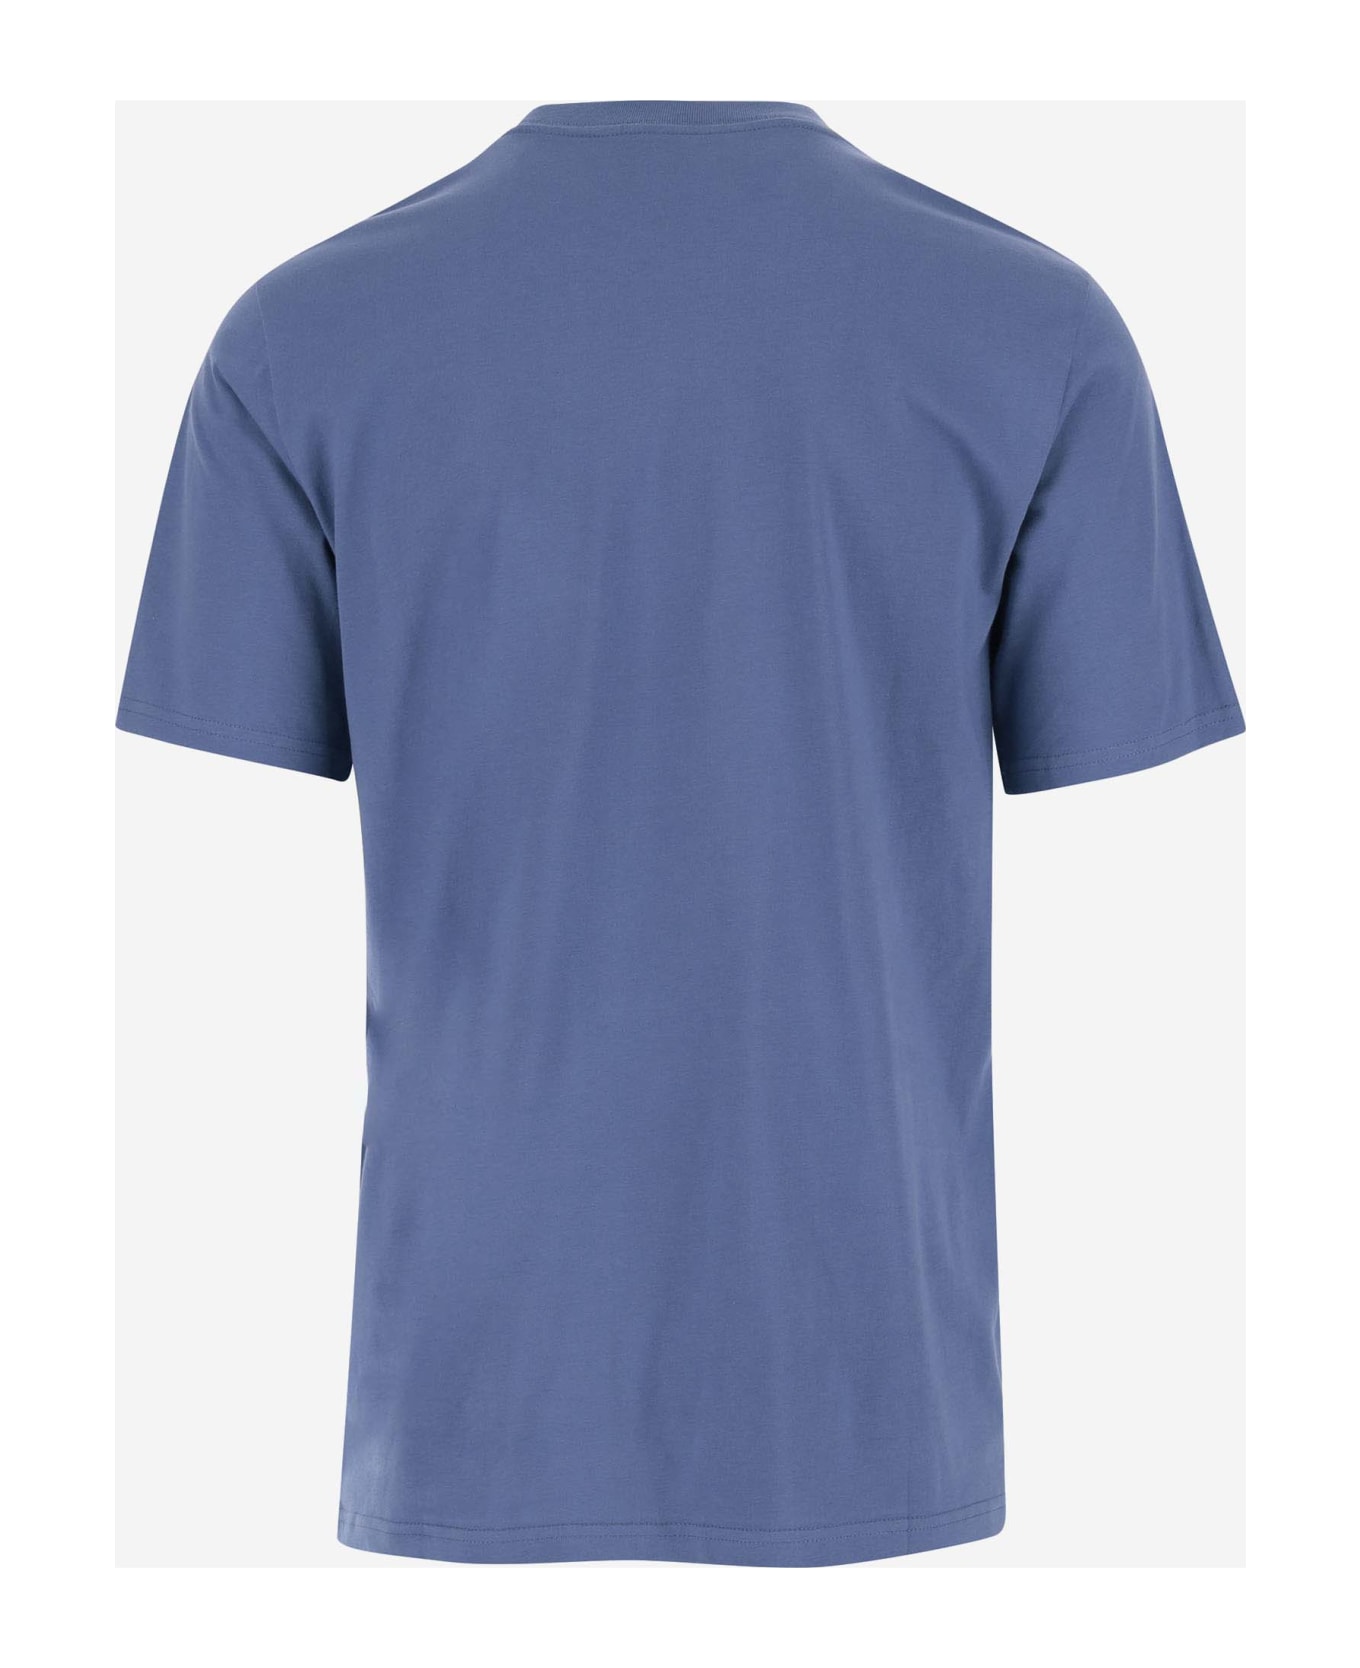 Carhartt Cotton T-shirt With Logo - Blue